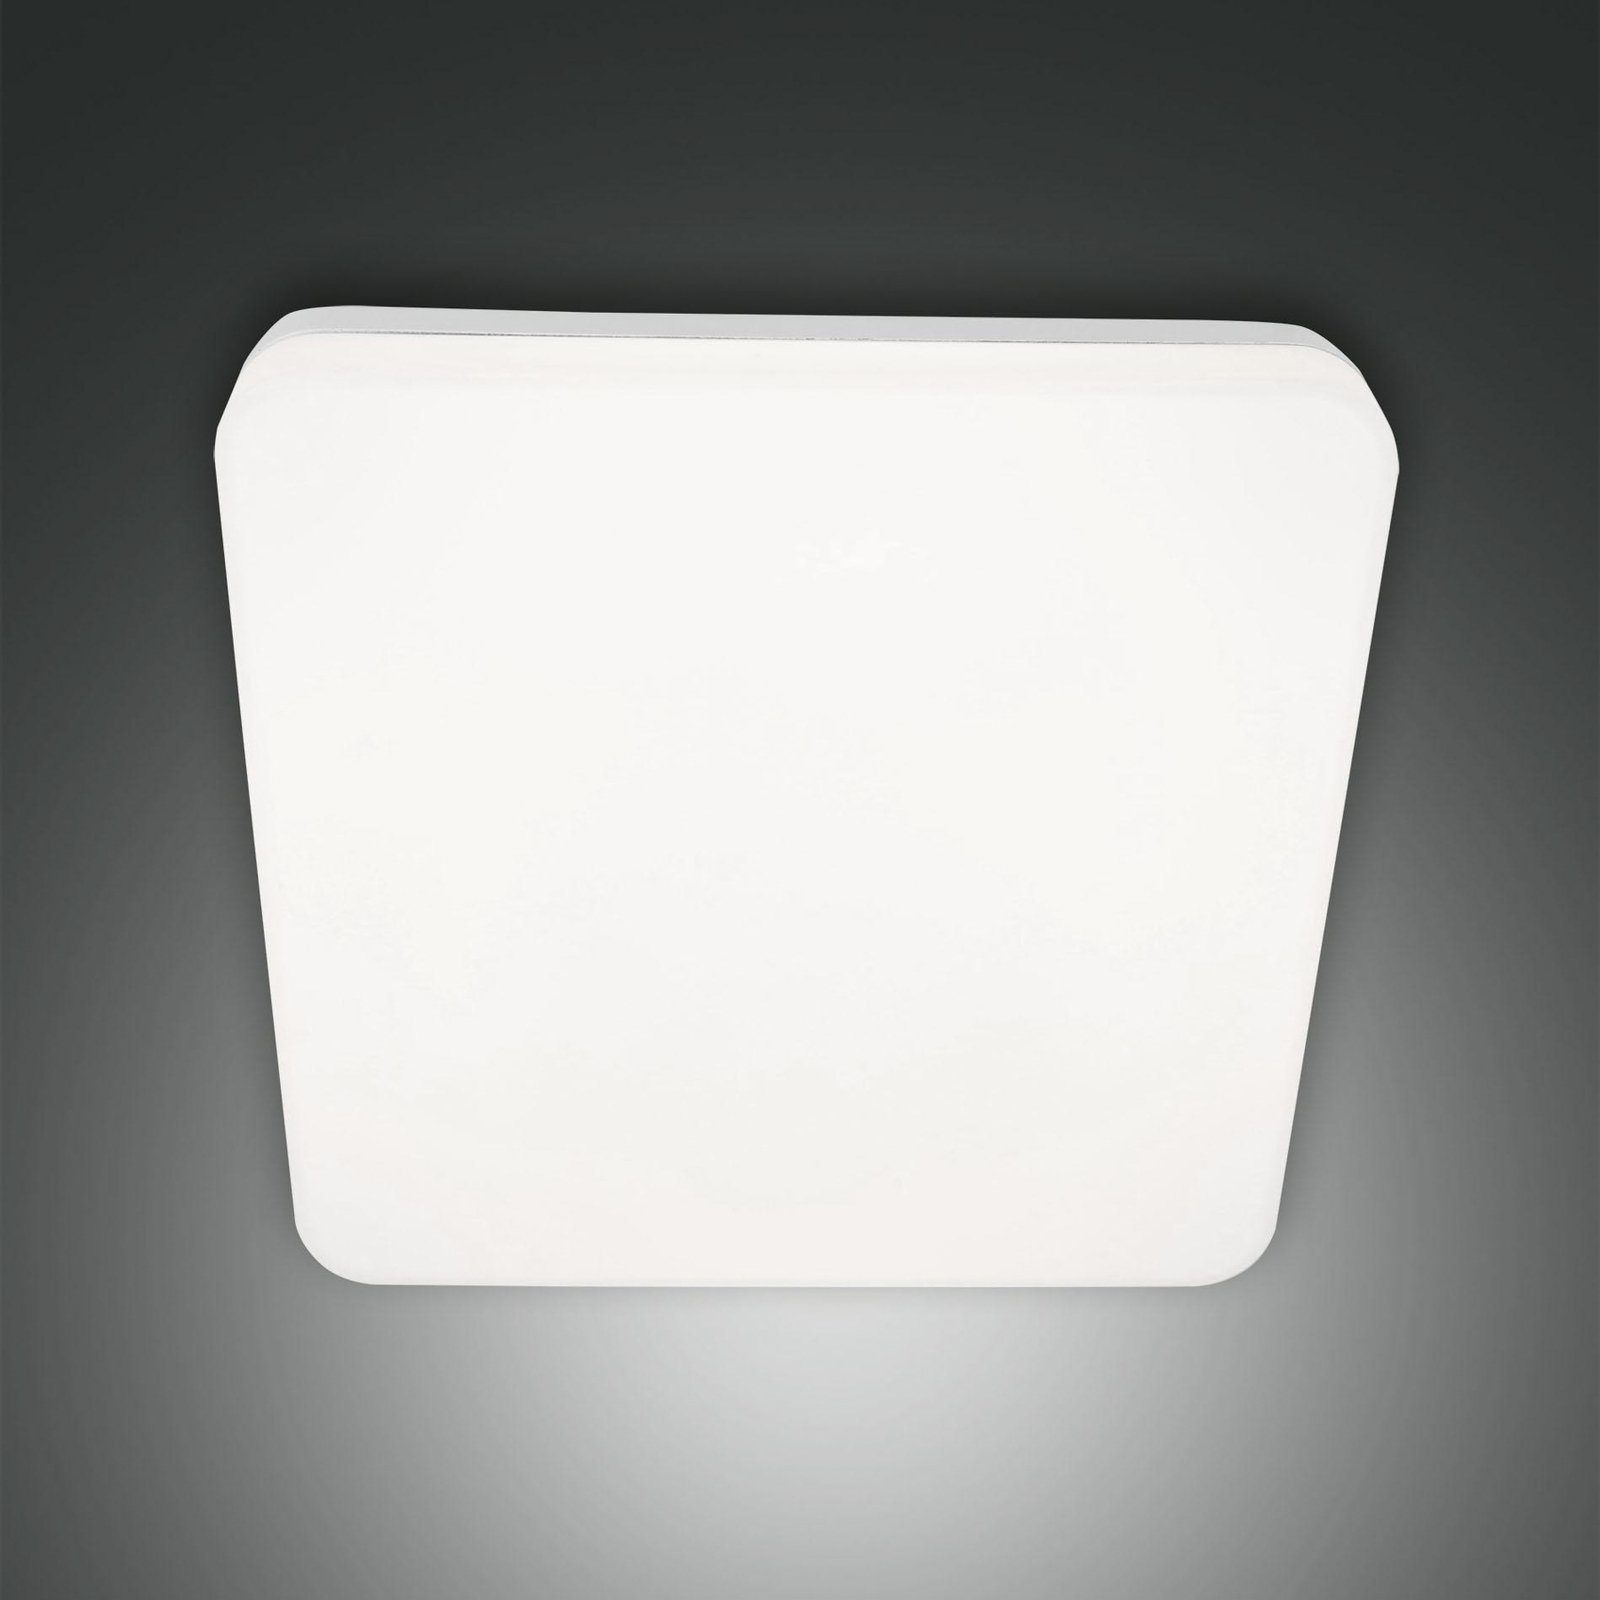 Folk LED ulkokattovalaisin, tunnistin, 28 x 28 cm, valkoinen, IP65